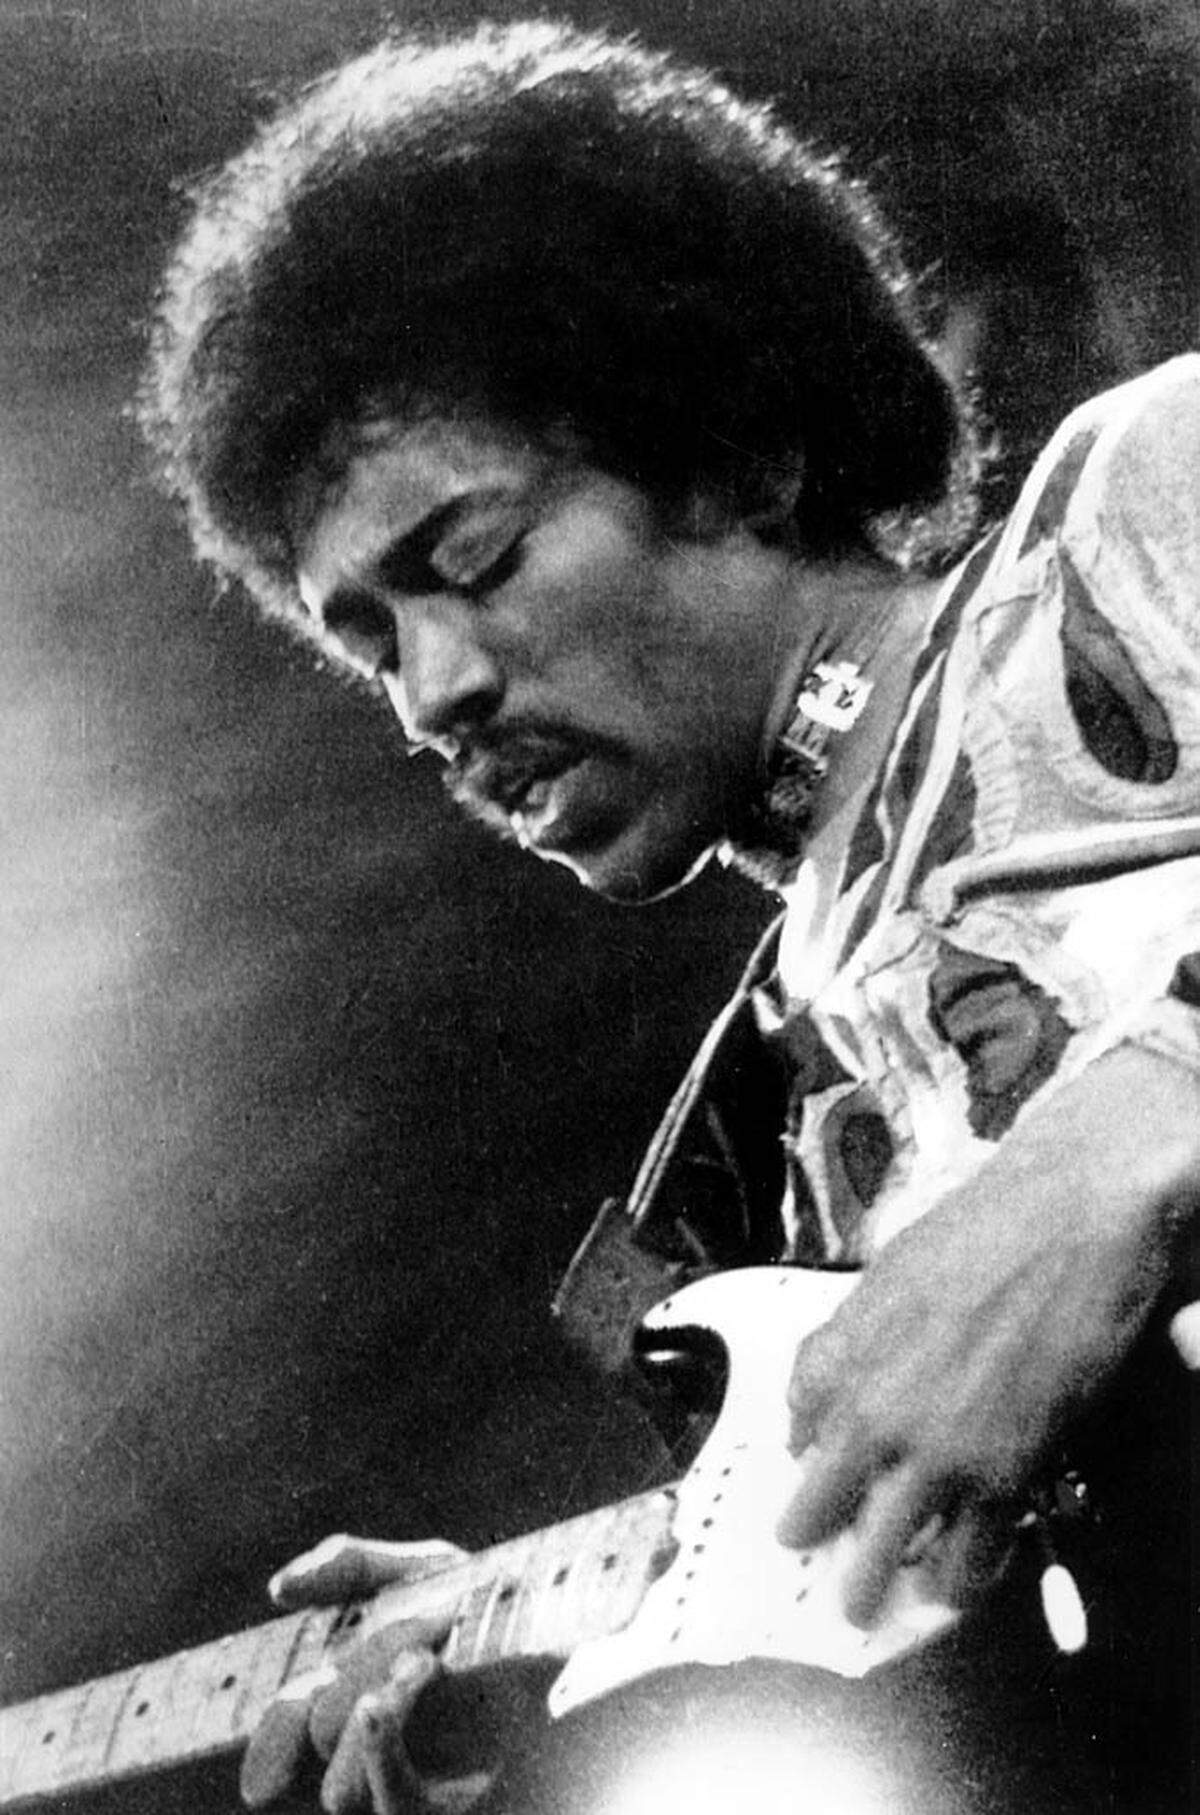 Mit seinem Solo beim legendären Woodstock-Festival hat der Gitarrist, Sänger und Komponist einer ganzen Musik-Epoche seinen Stempel aufgedrückt: Als er die US-Nationalhymne verfremdete und virtuos Sirenengeheul und Geschützdonner einbaute, machte sich Hendrix zur Speerspitze der Anti-Vietnamkrieg-Bewegung und zur Ikone einer Generation.